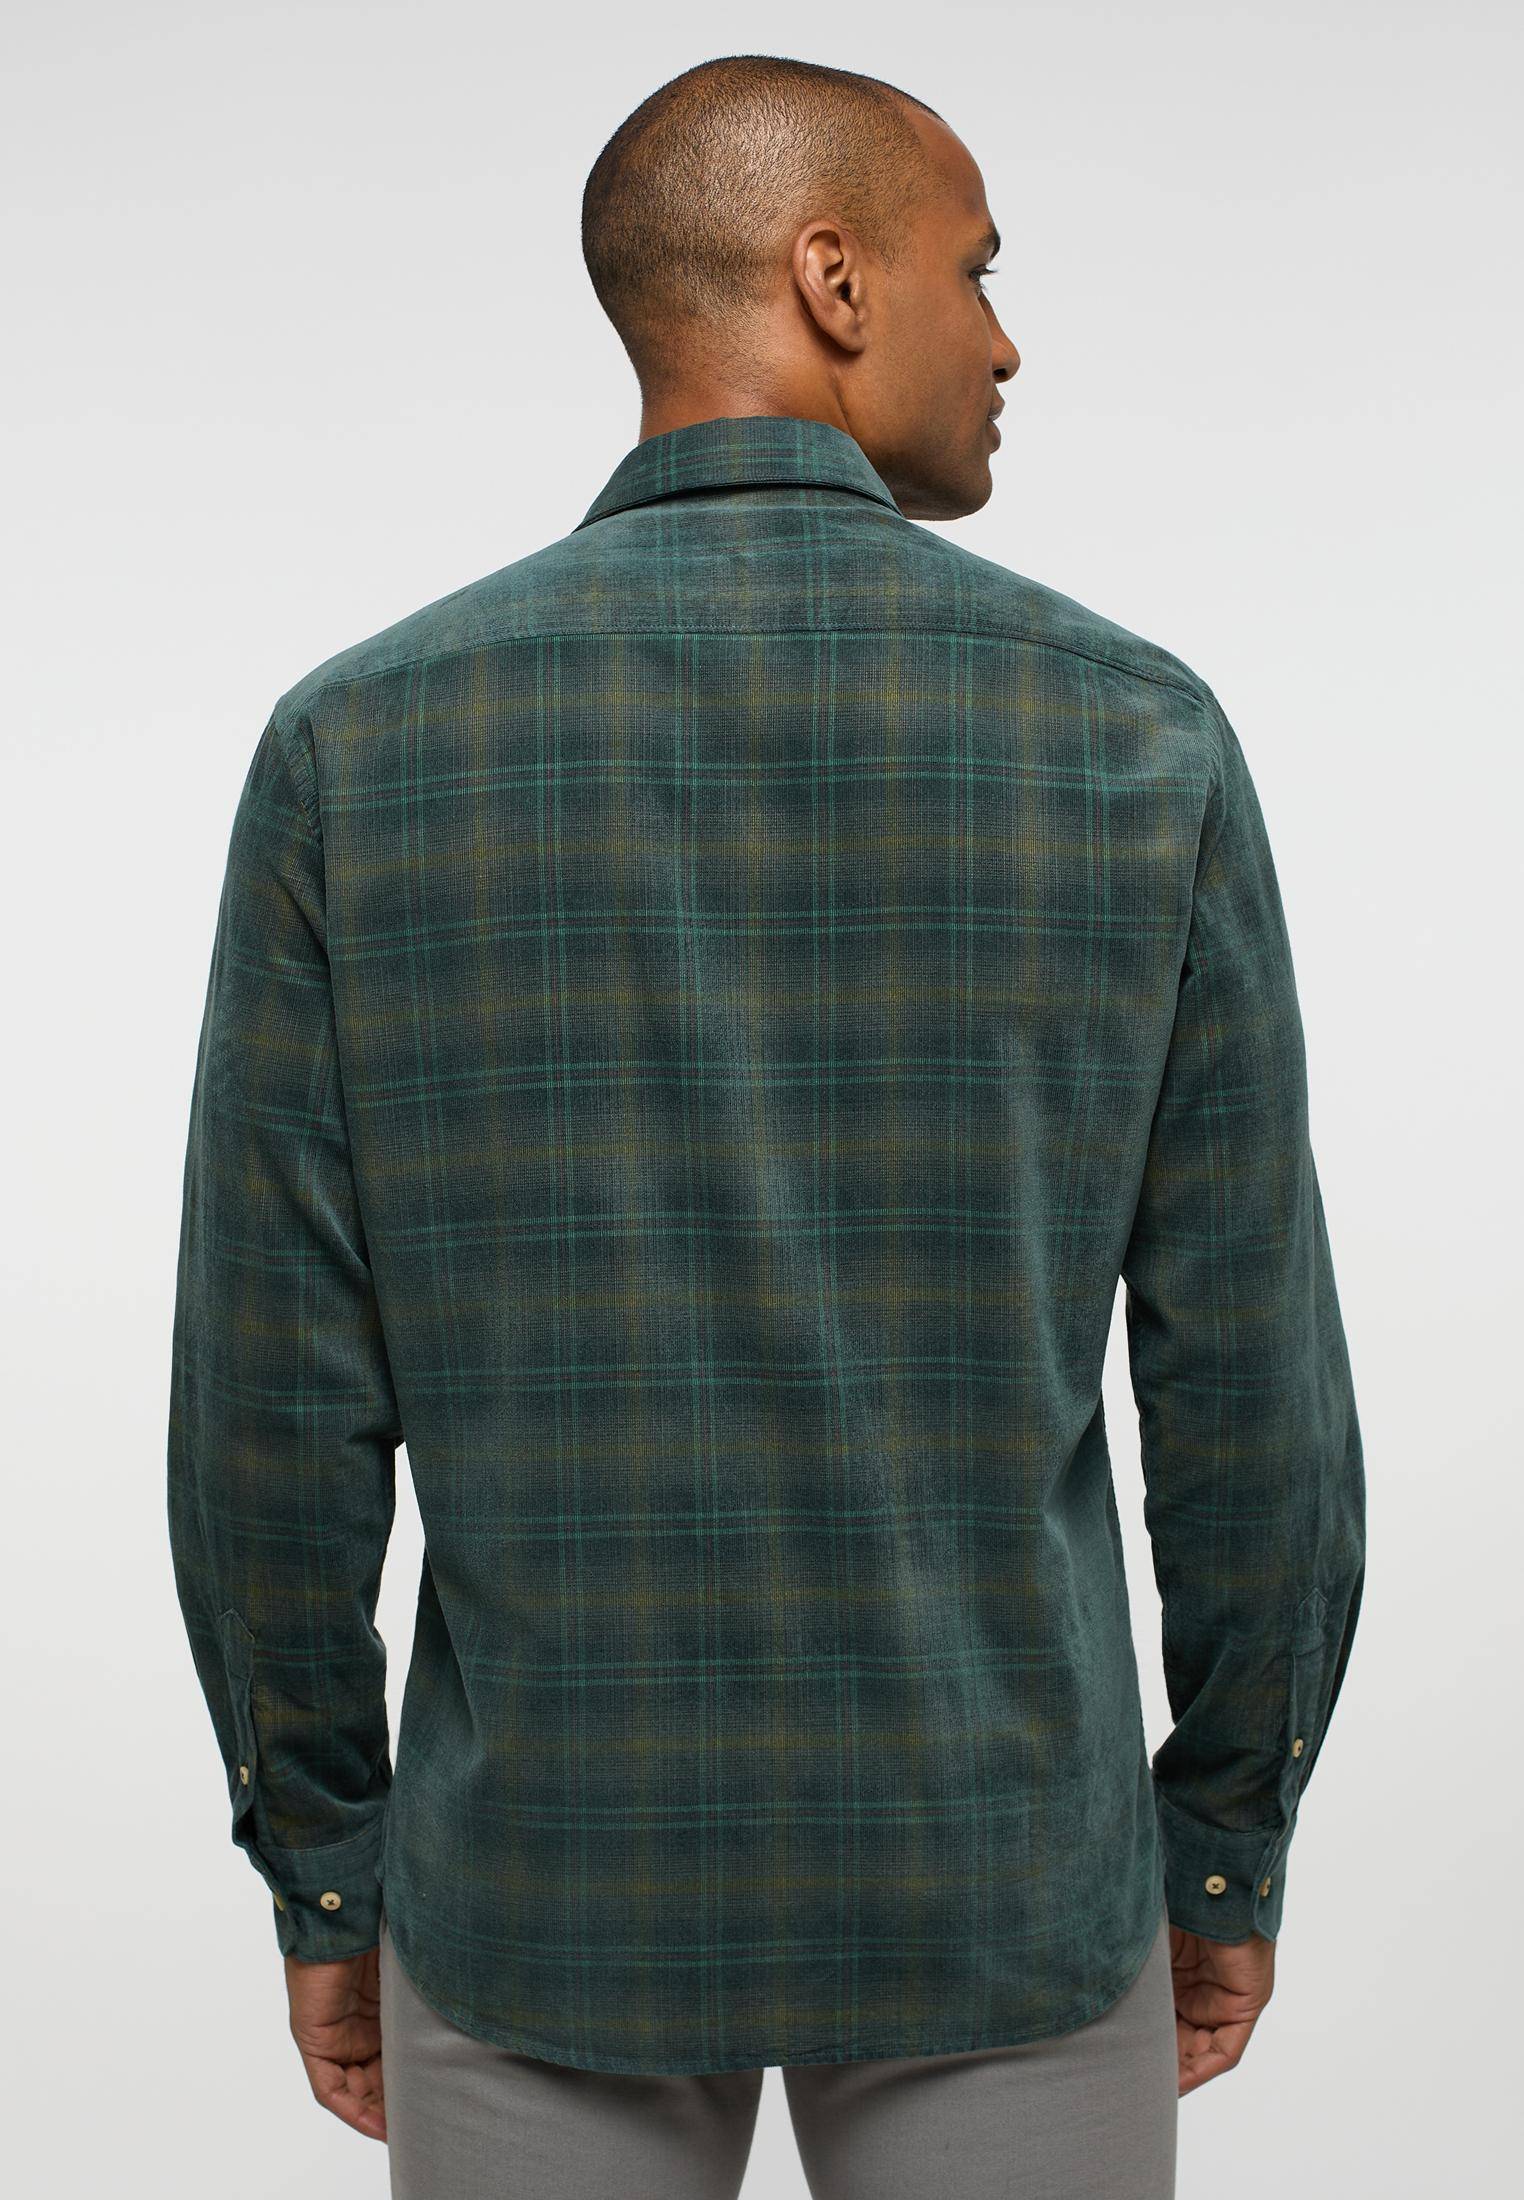 Мужская рубашка ETERNA, зеленая, цвет зеленый, размер 50 - фото 5